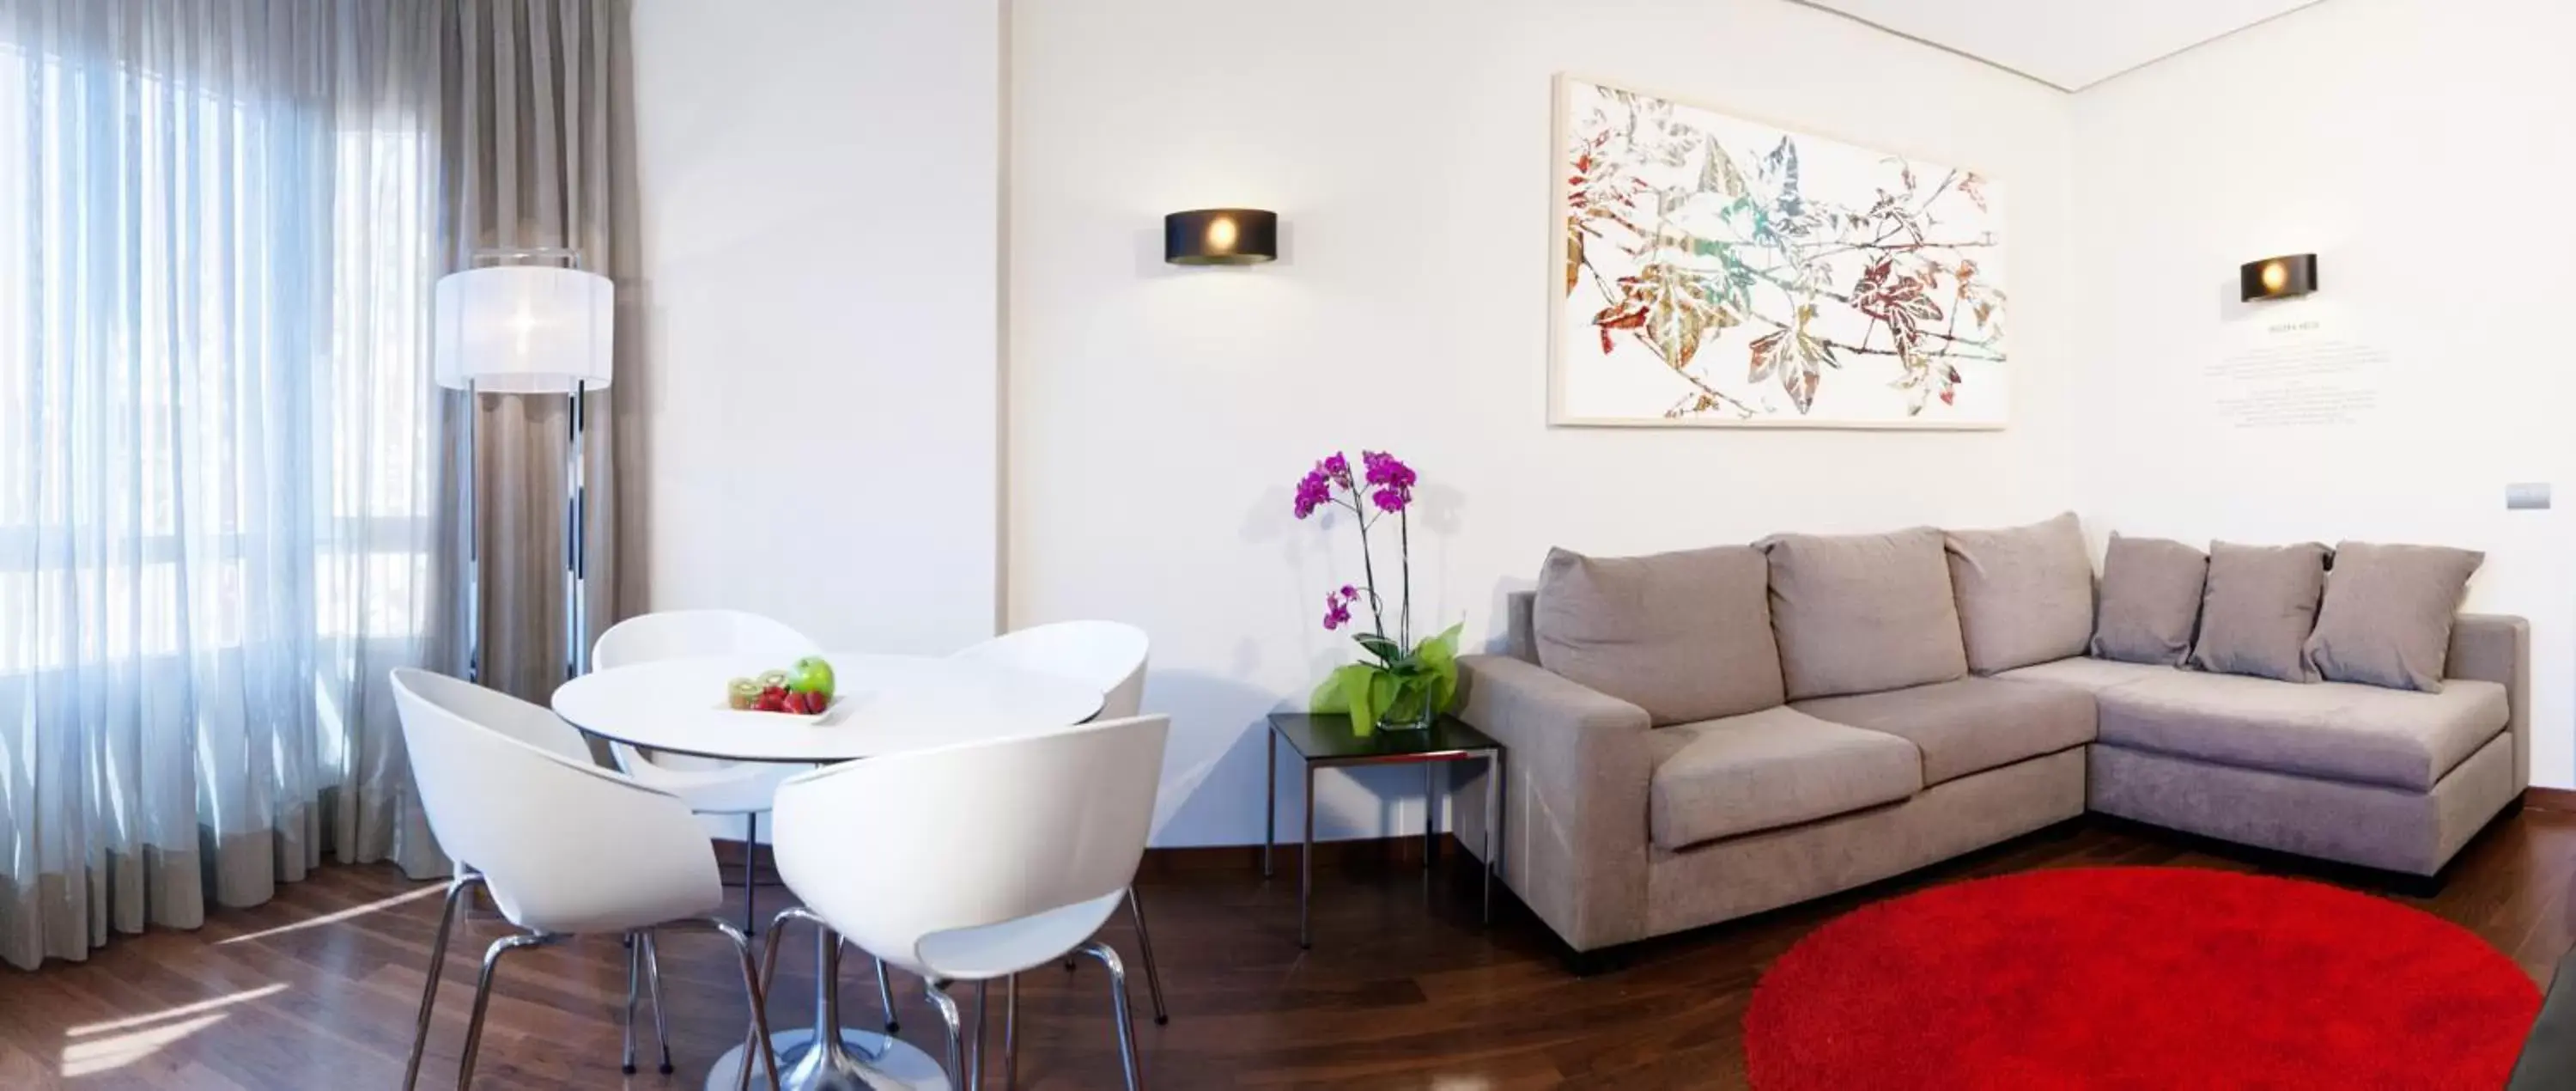 Living room, Seating Area in Apartosuites Jardines de Sabatini